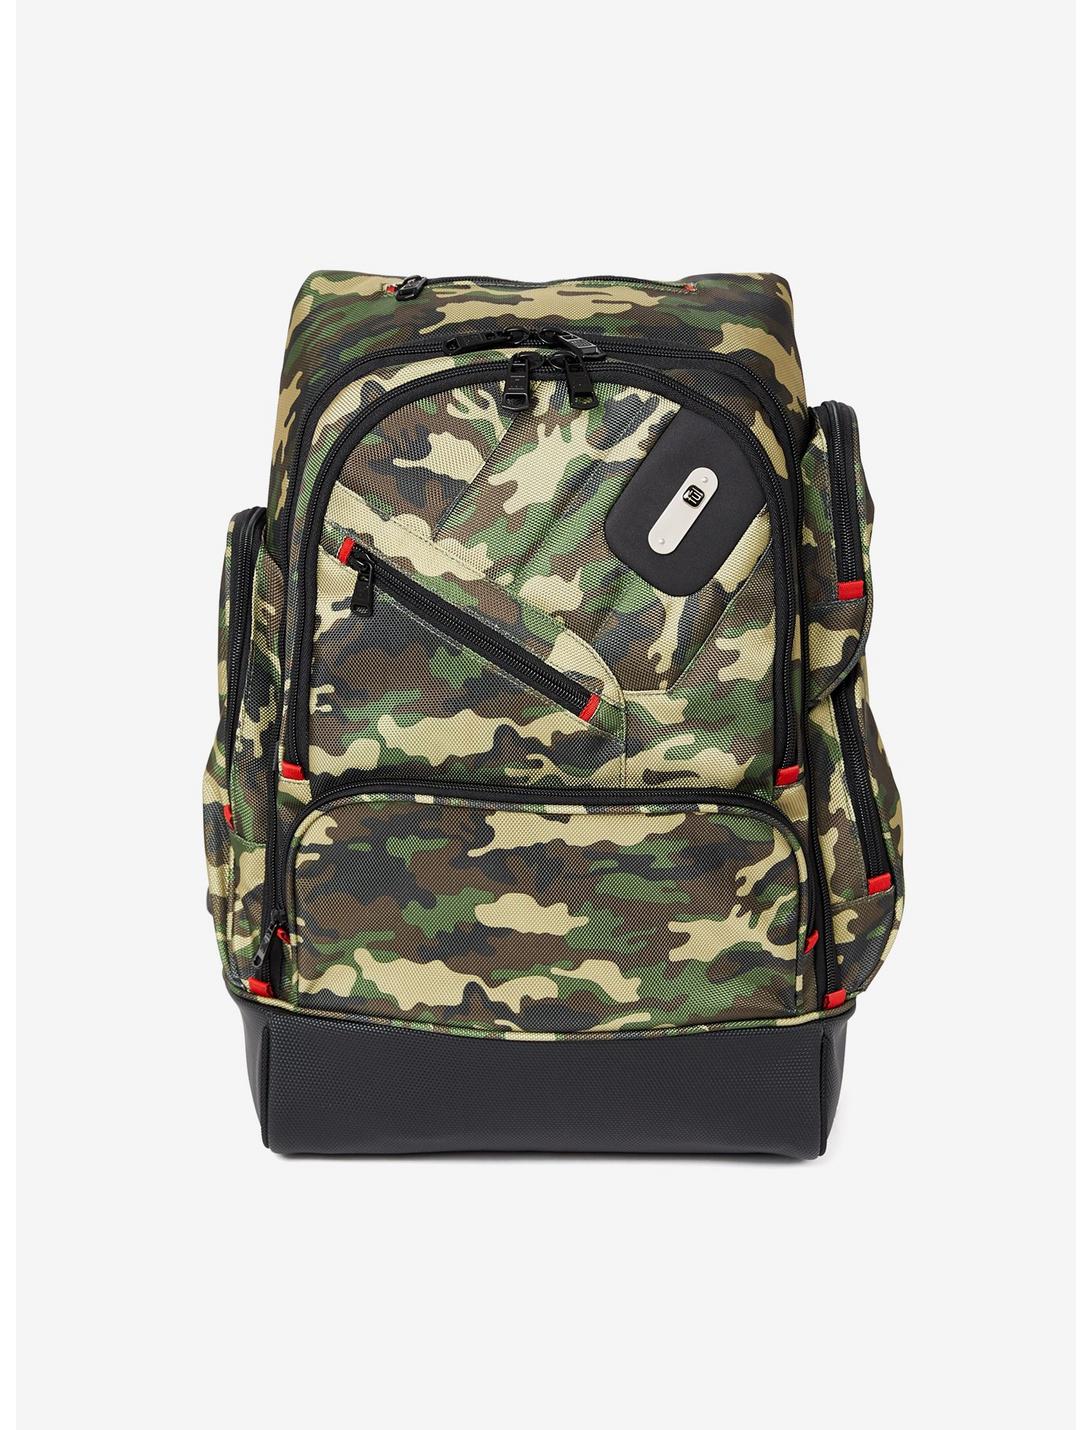 FUL Refugee Camo Laptop Backpack, , hi-res